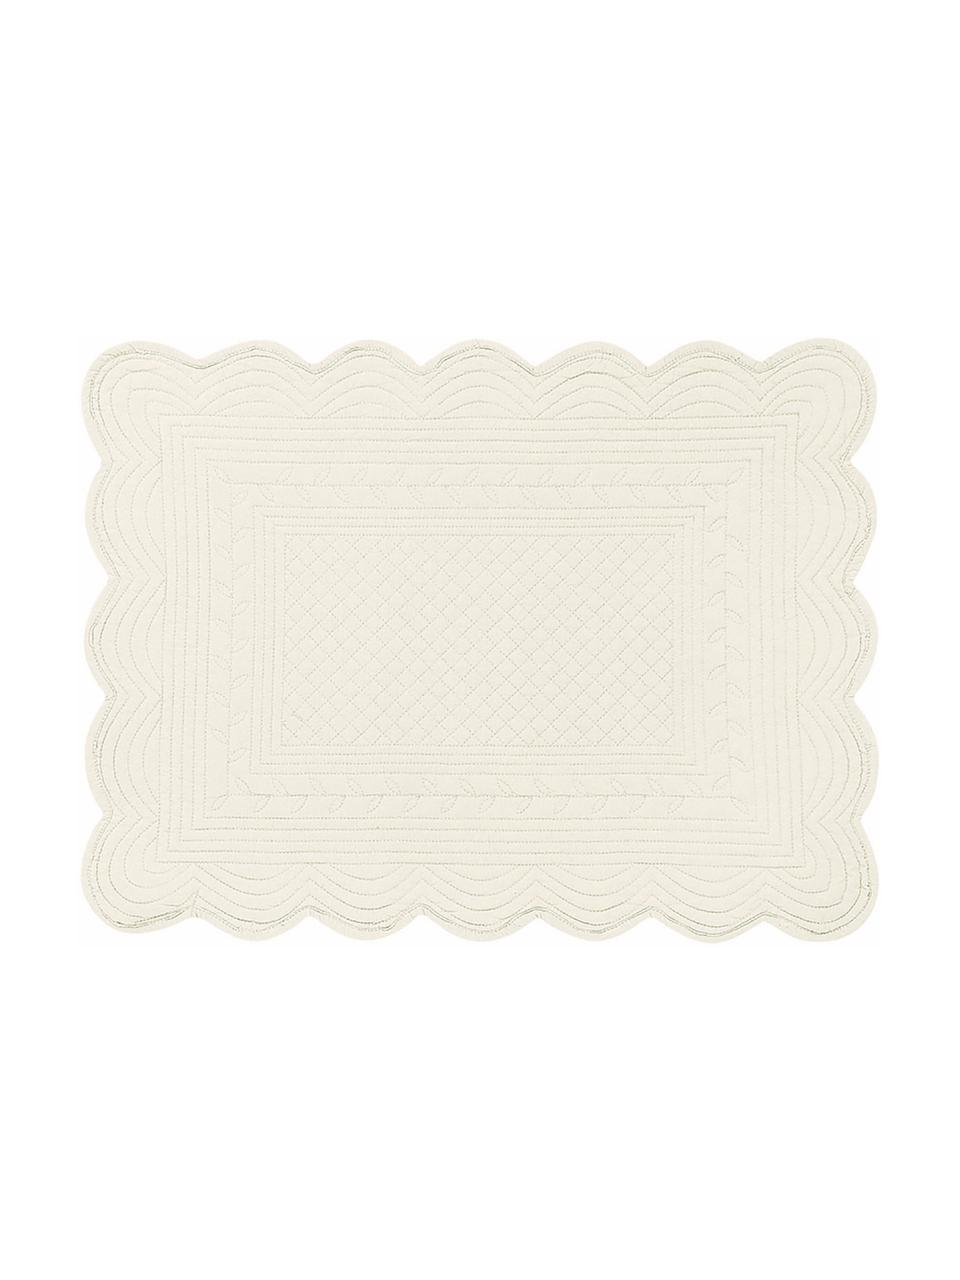 Podkładka z bawełny Boutis, 2 szt., 100% bawełna, Kremowobiały, S 34 x D 48 cm